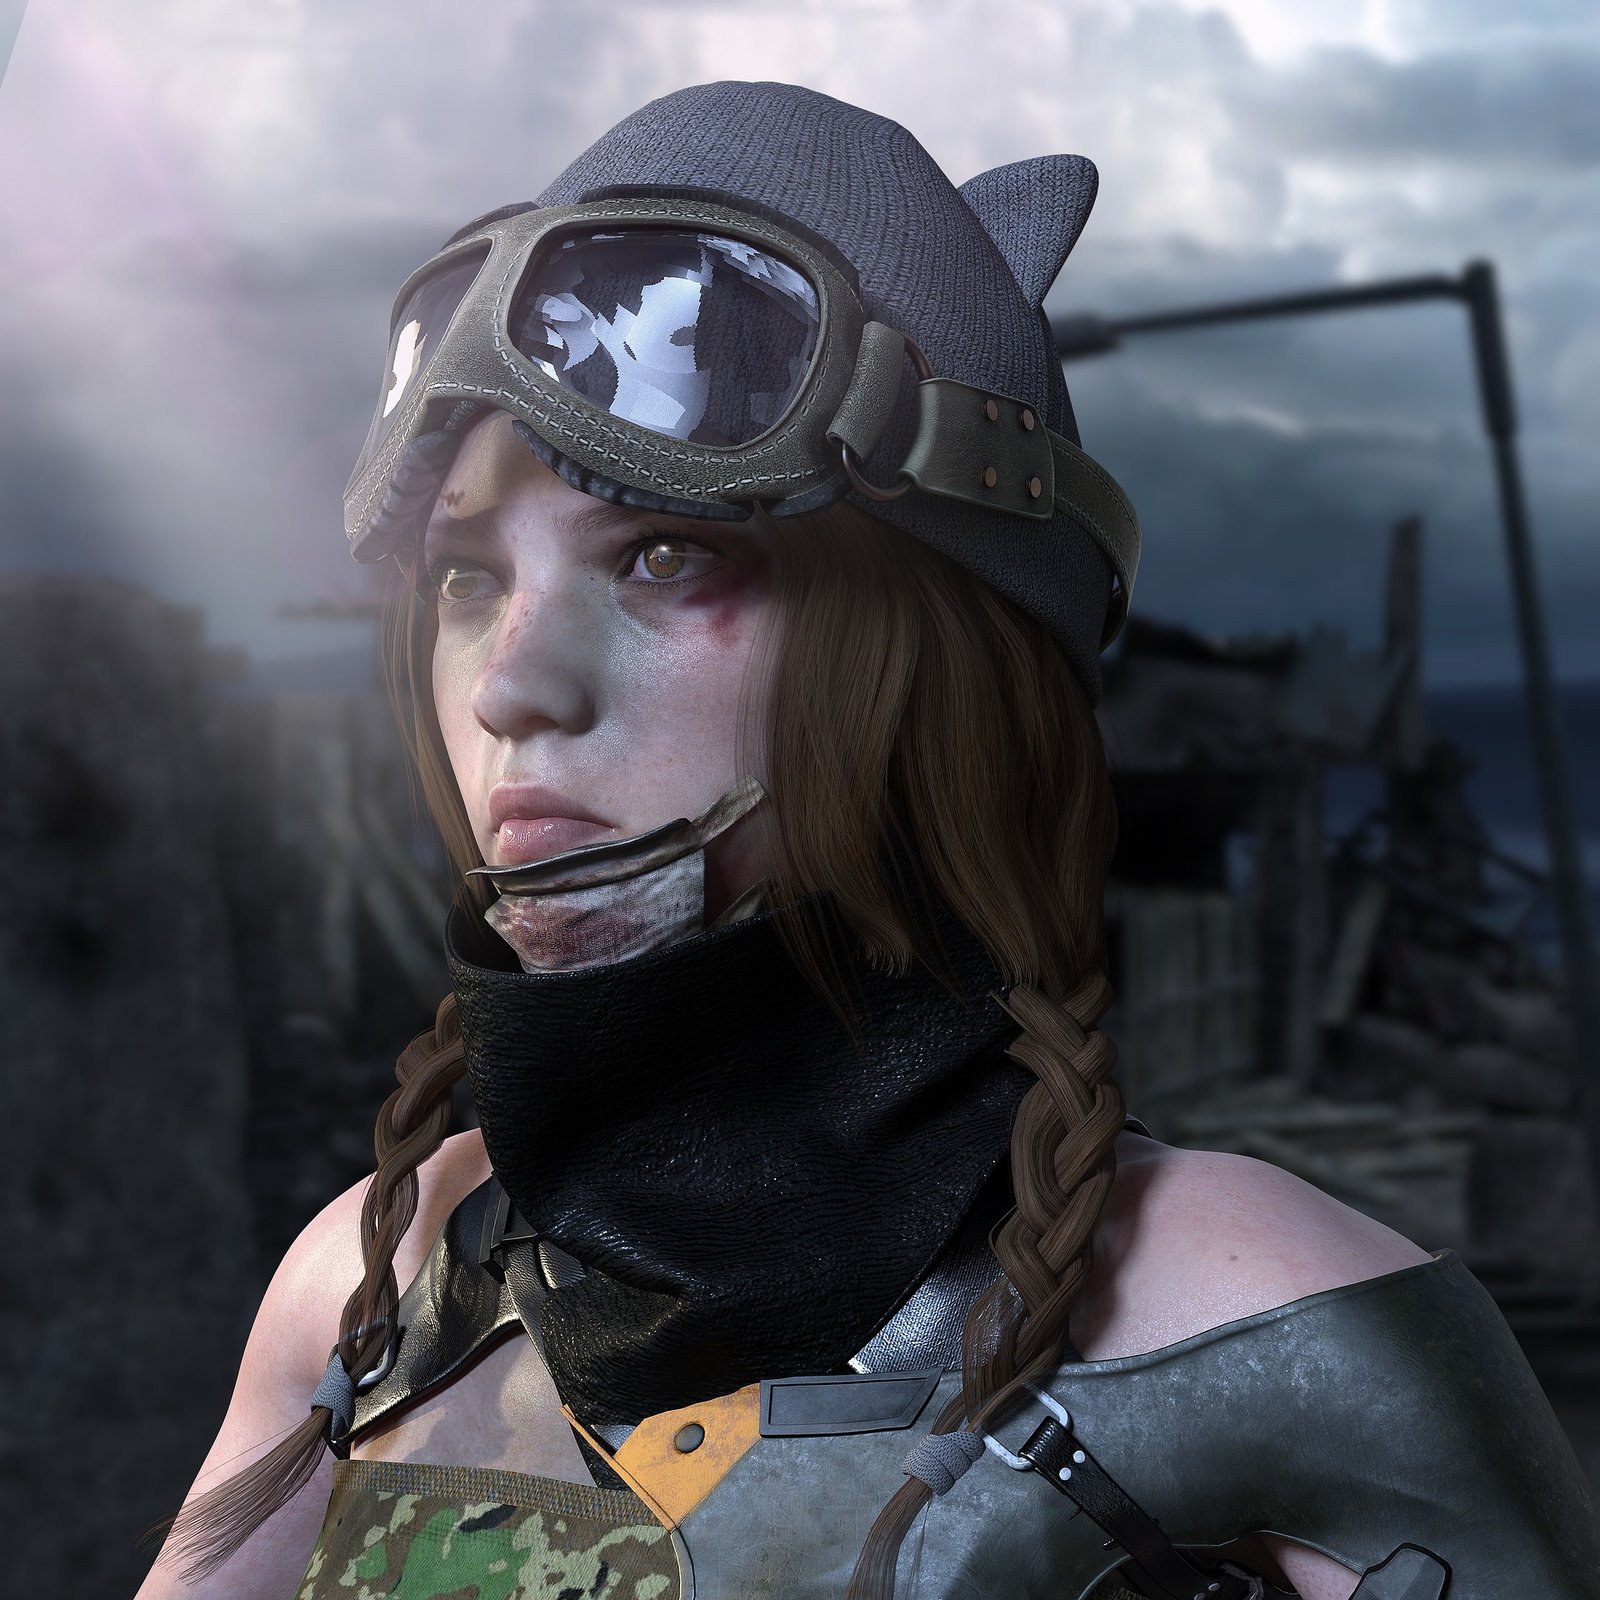 menina em guerra com mascara de piloto de aviao